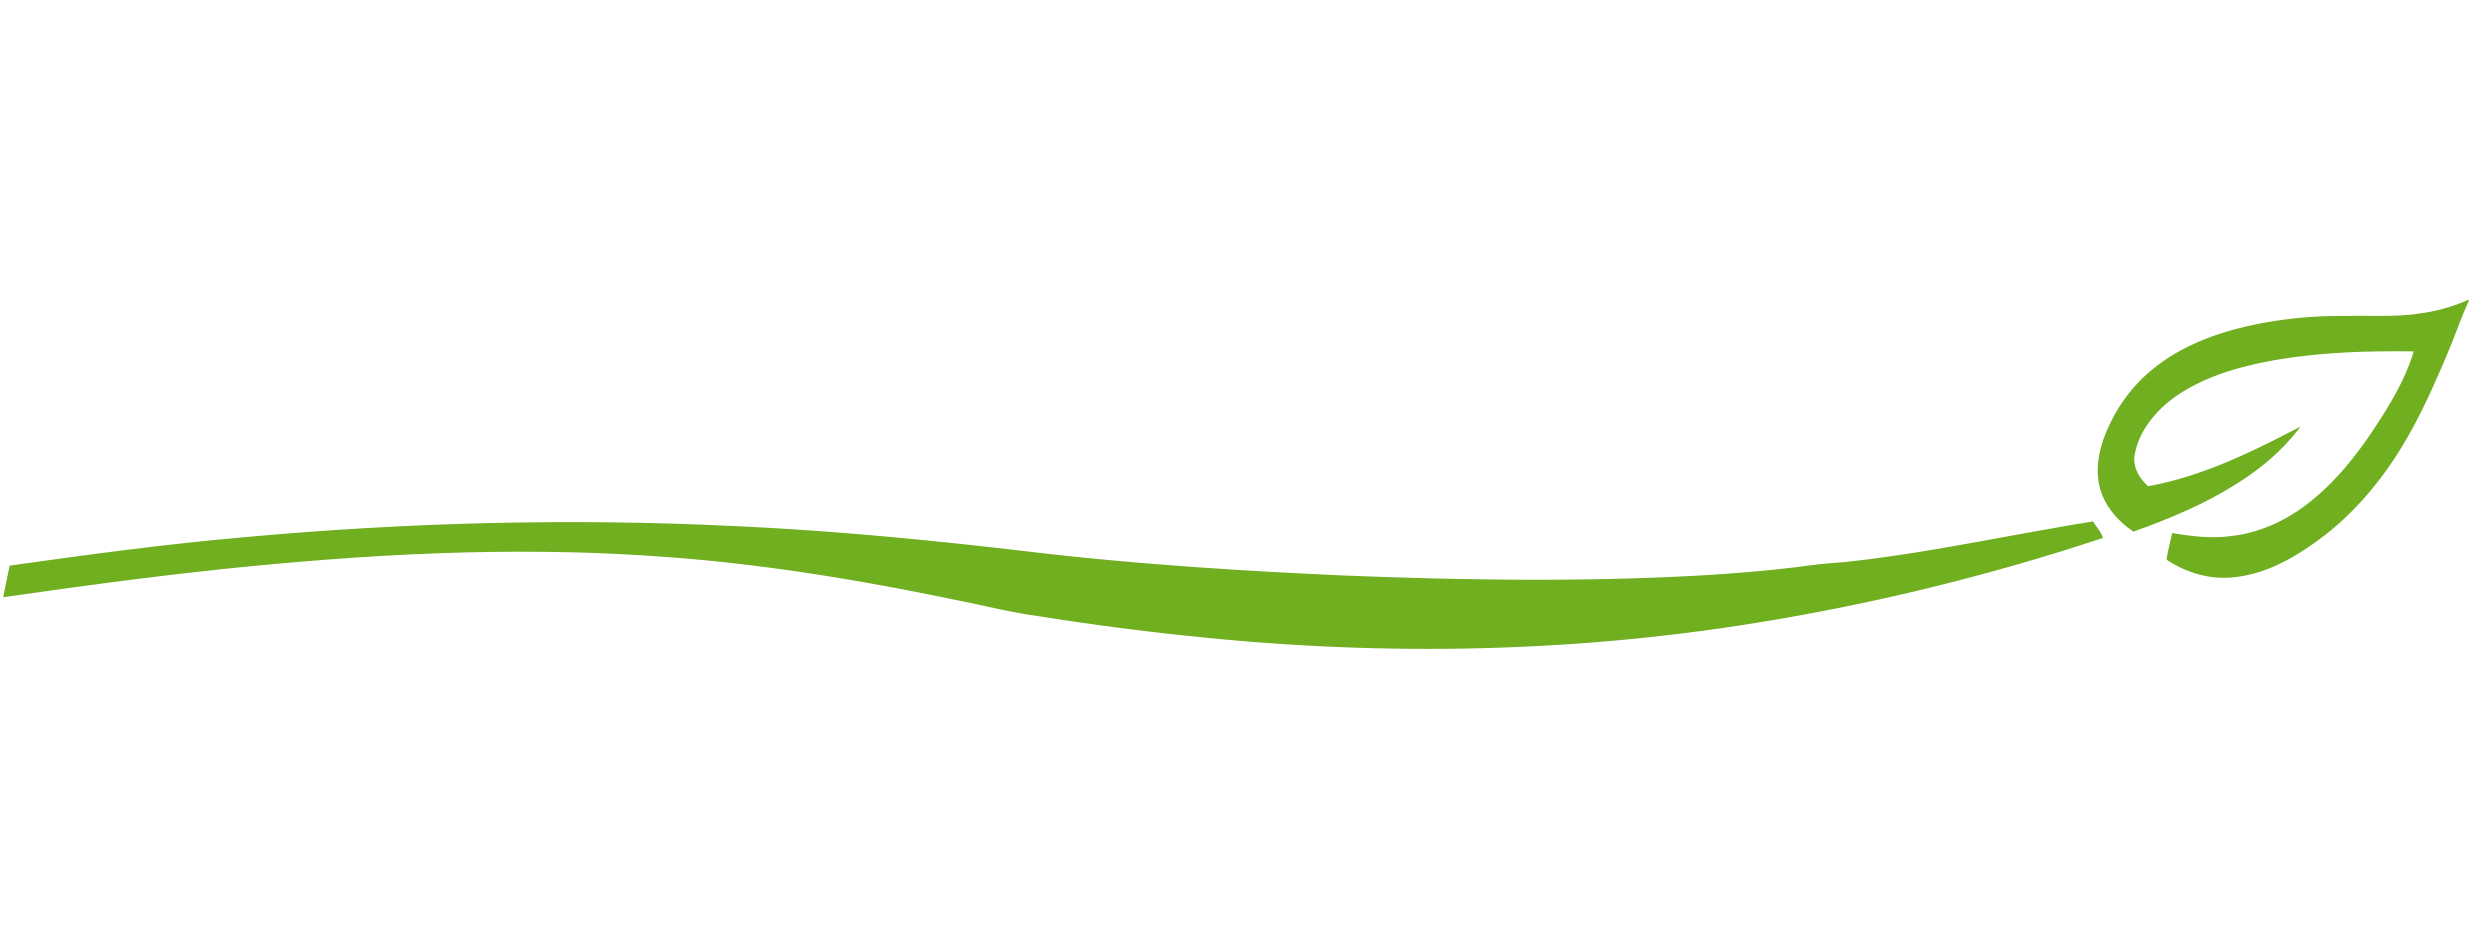 LANA DE ACERO – FARCOSA – Productos de Higiene y Desinfección